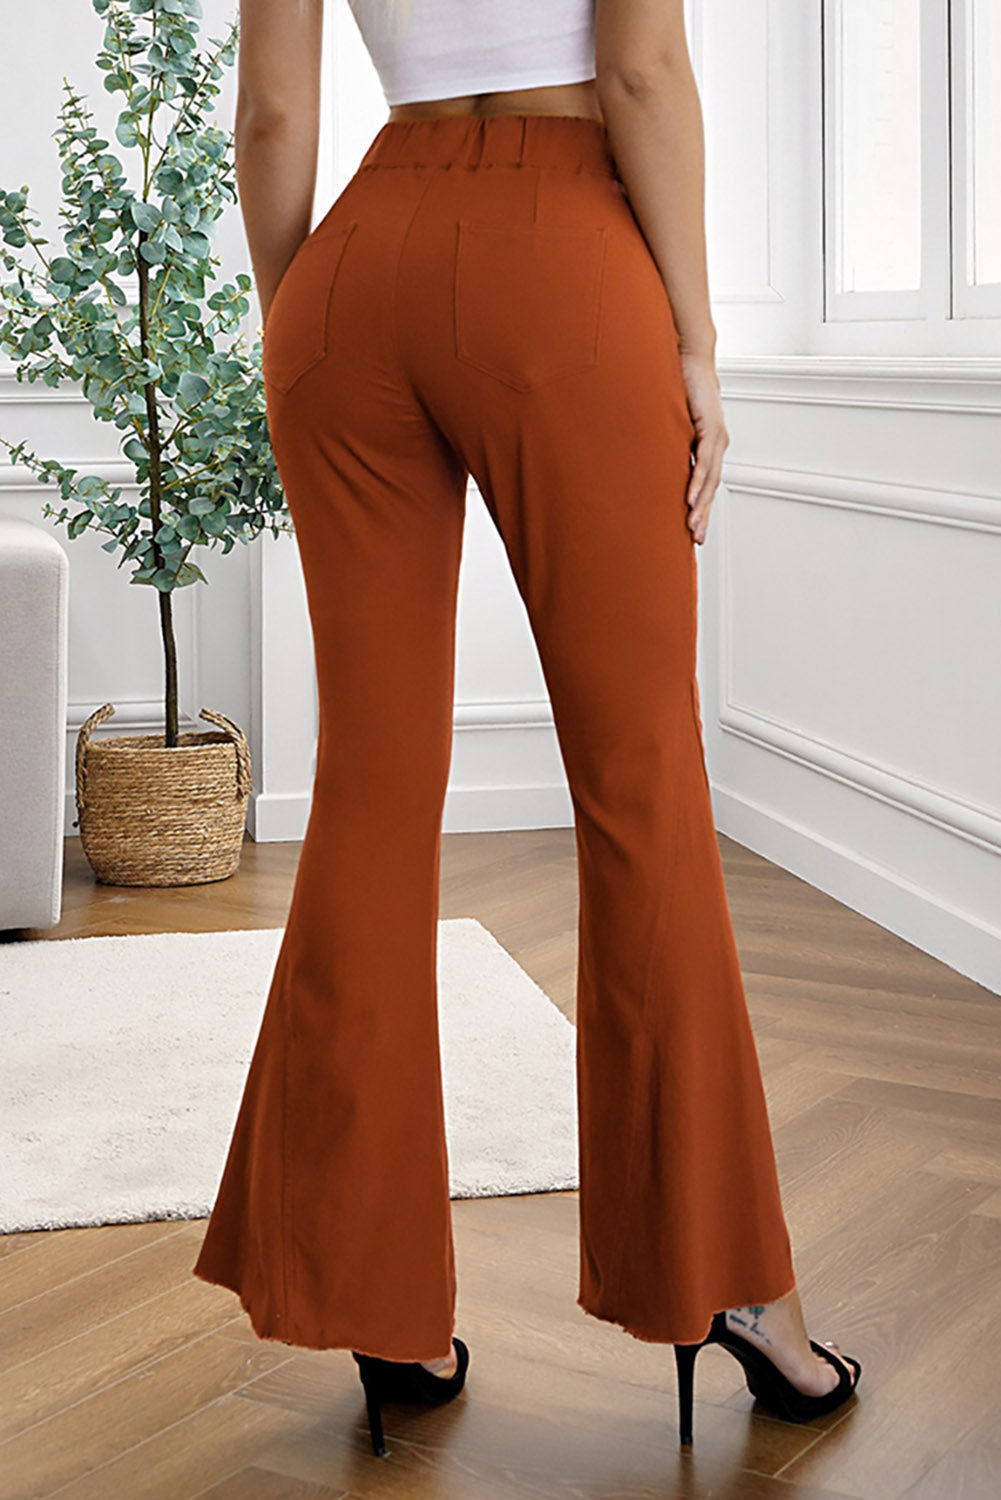 Brown Distressed Bell Bottom Denim Pants Jeans JT's Designer Fashion